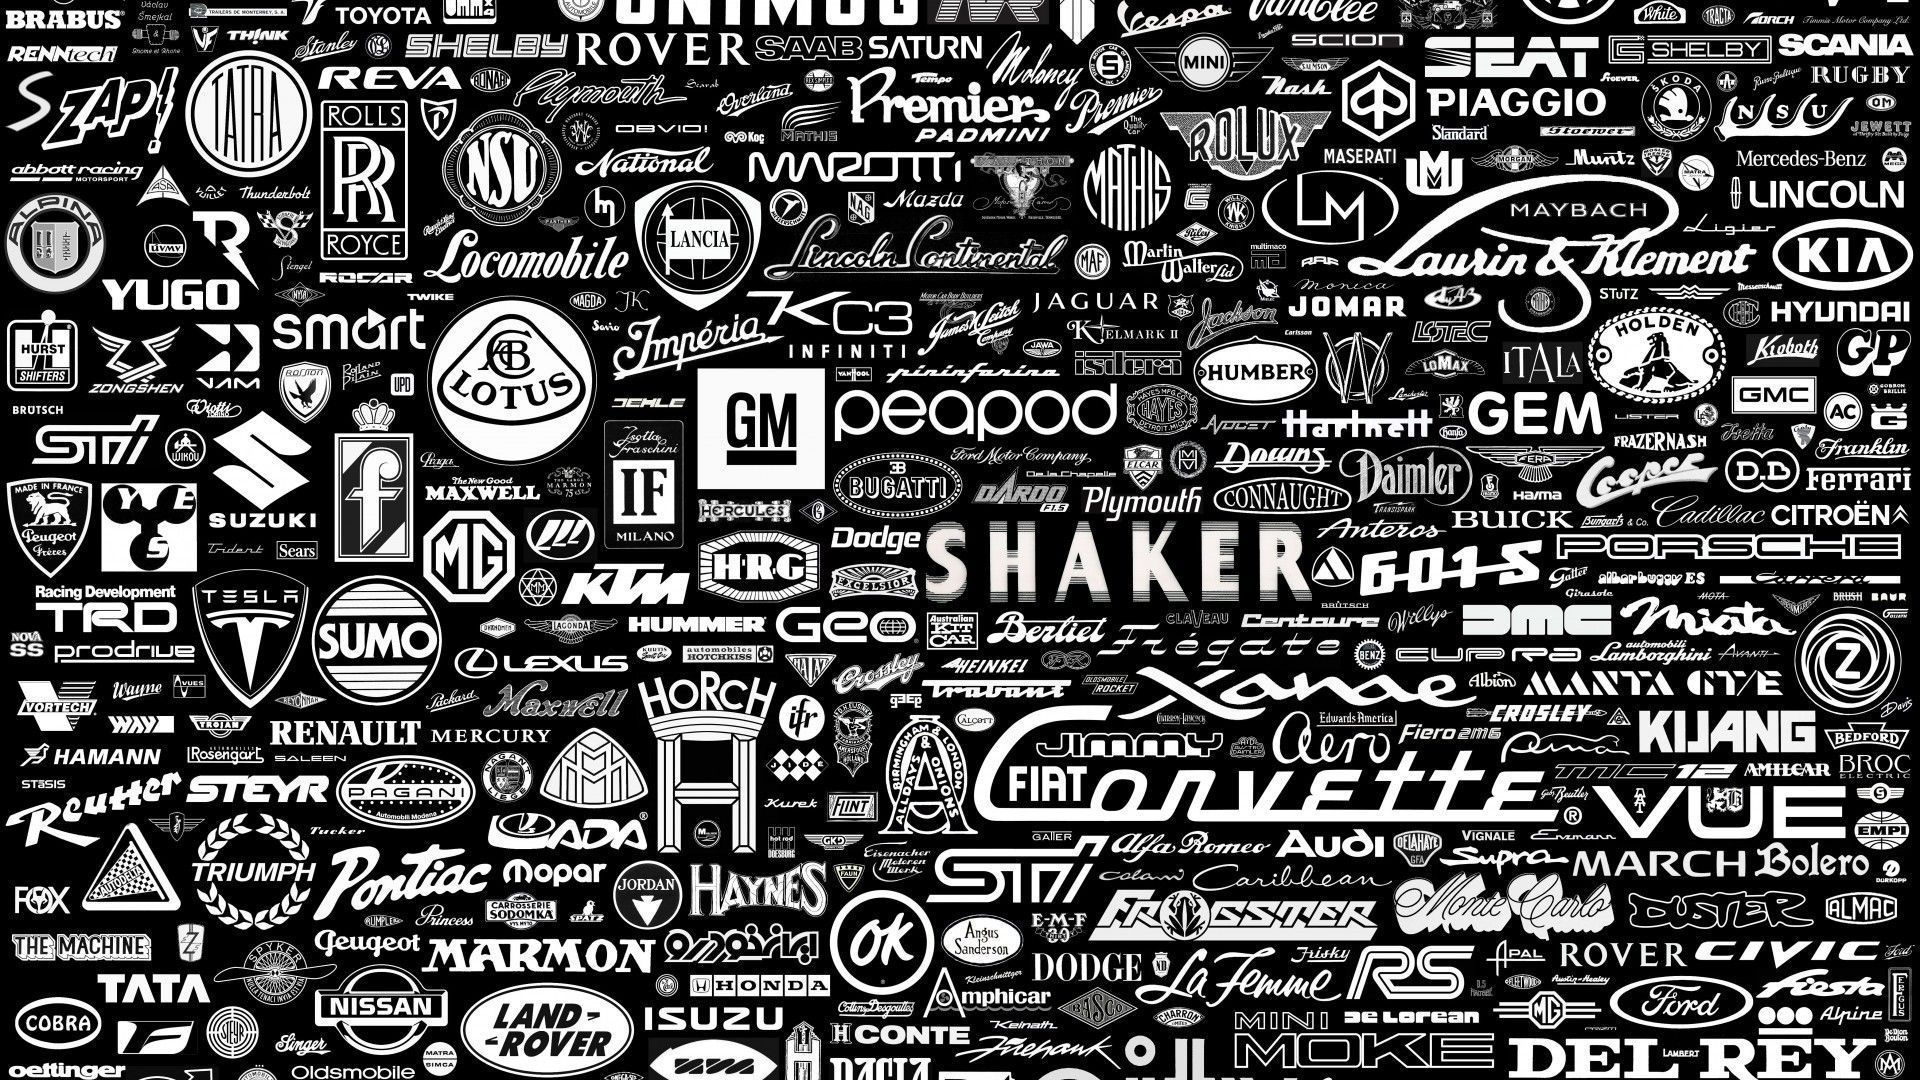 Car Brands HD .wallpapertip.com